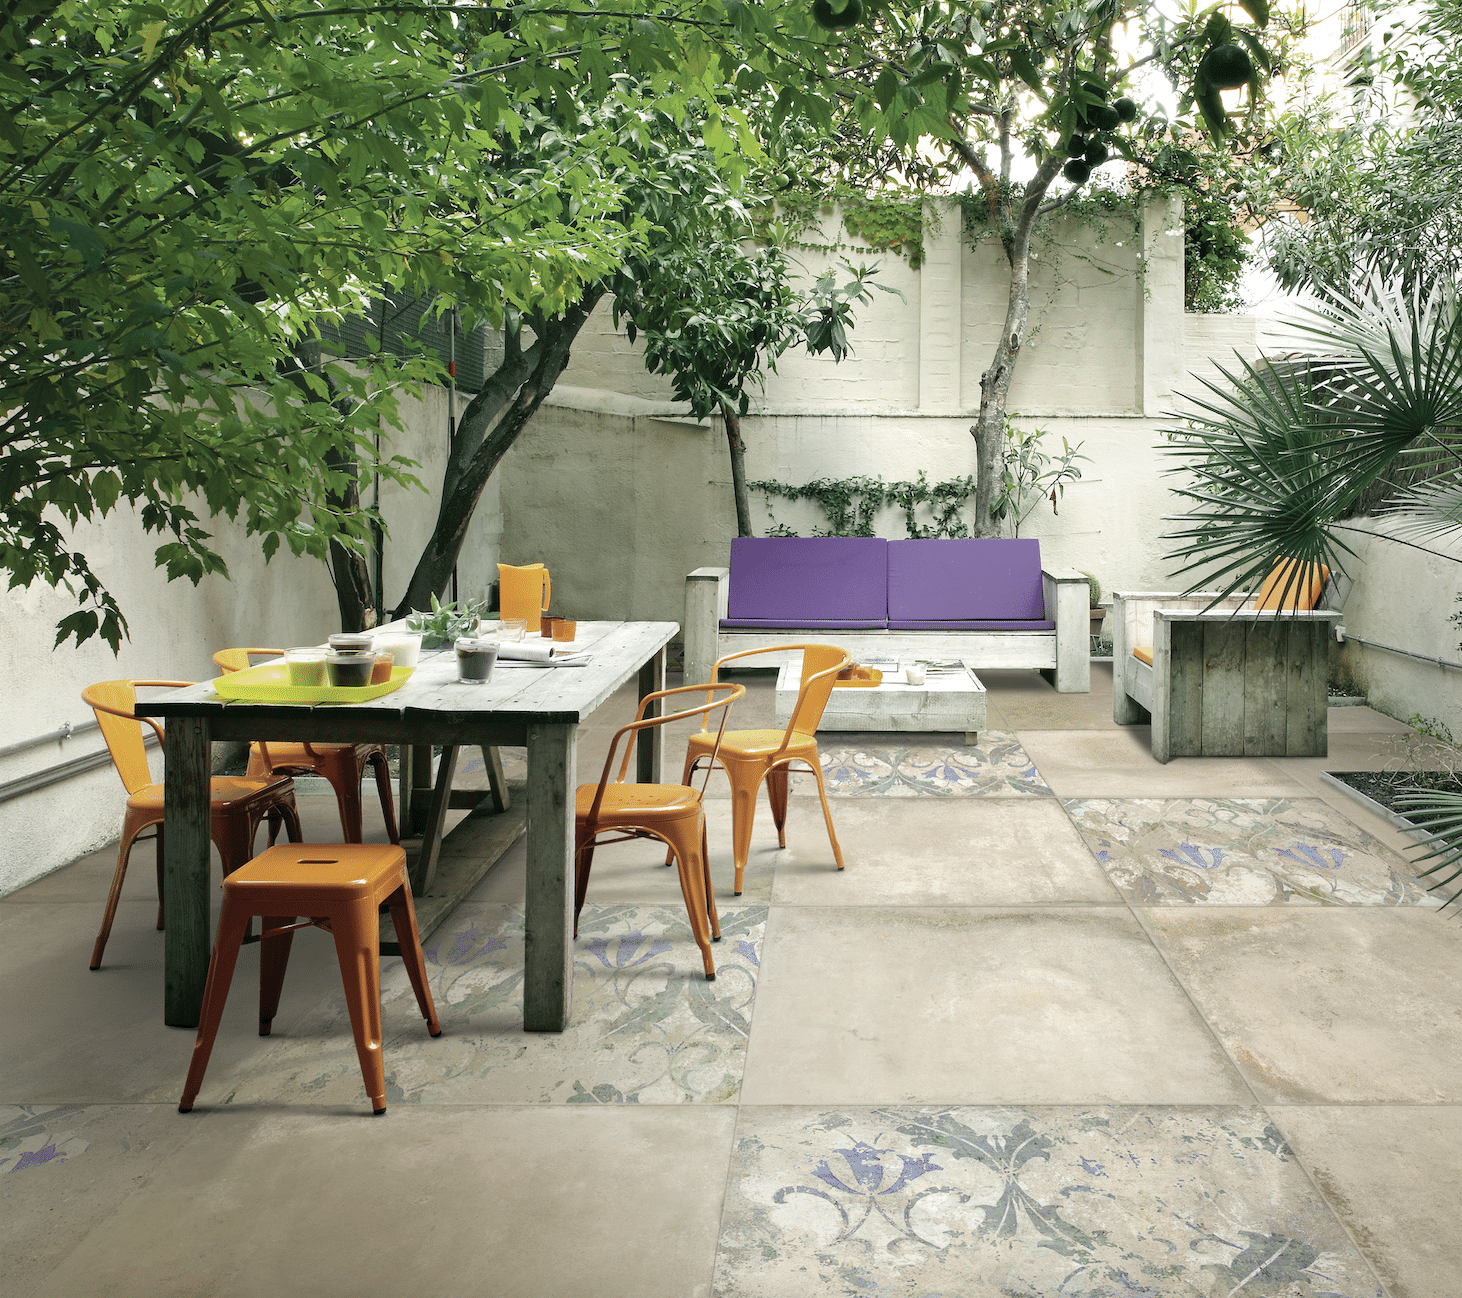 Terrasse mit Essbereich, Sitzmöglichkeiten und teilweise gemustertem Fliesenboden im portugiesischen Azulejo-Stil.